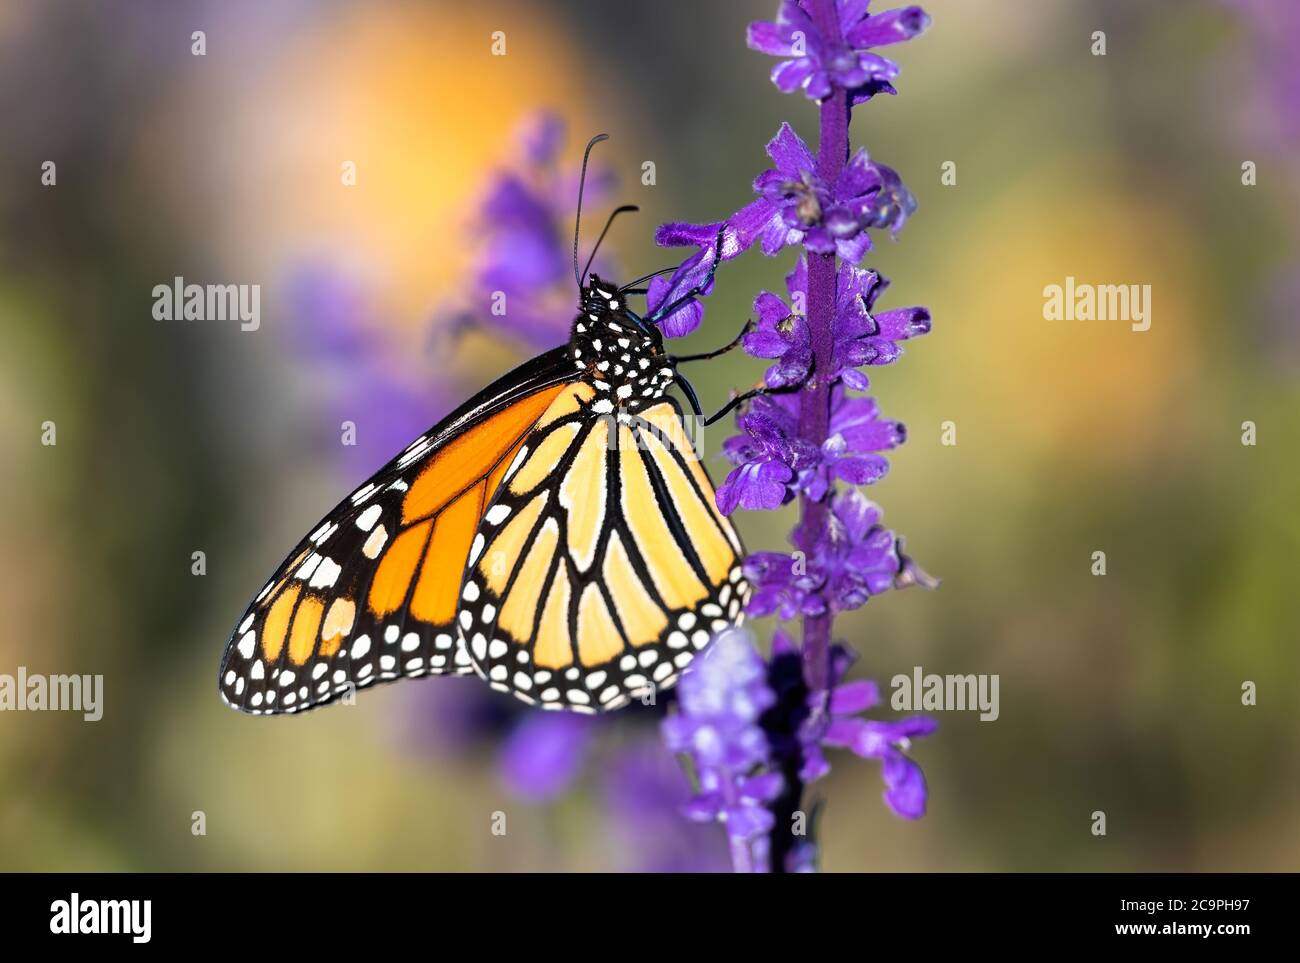 Una imagen de perfil lateral de una mariposa monarca subiendo una planta de lavanda de colores brillantes, dentro de un jardín de lavanda. Foto de stock